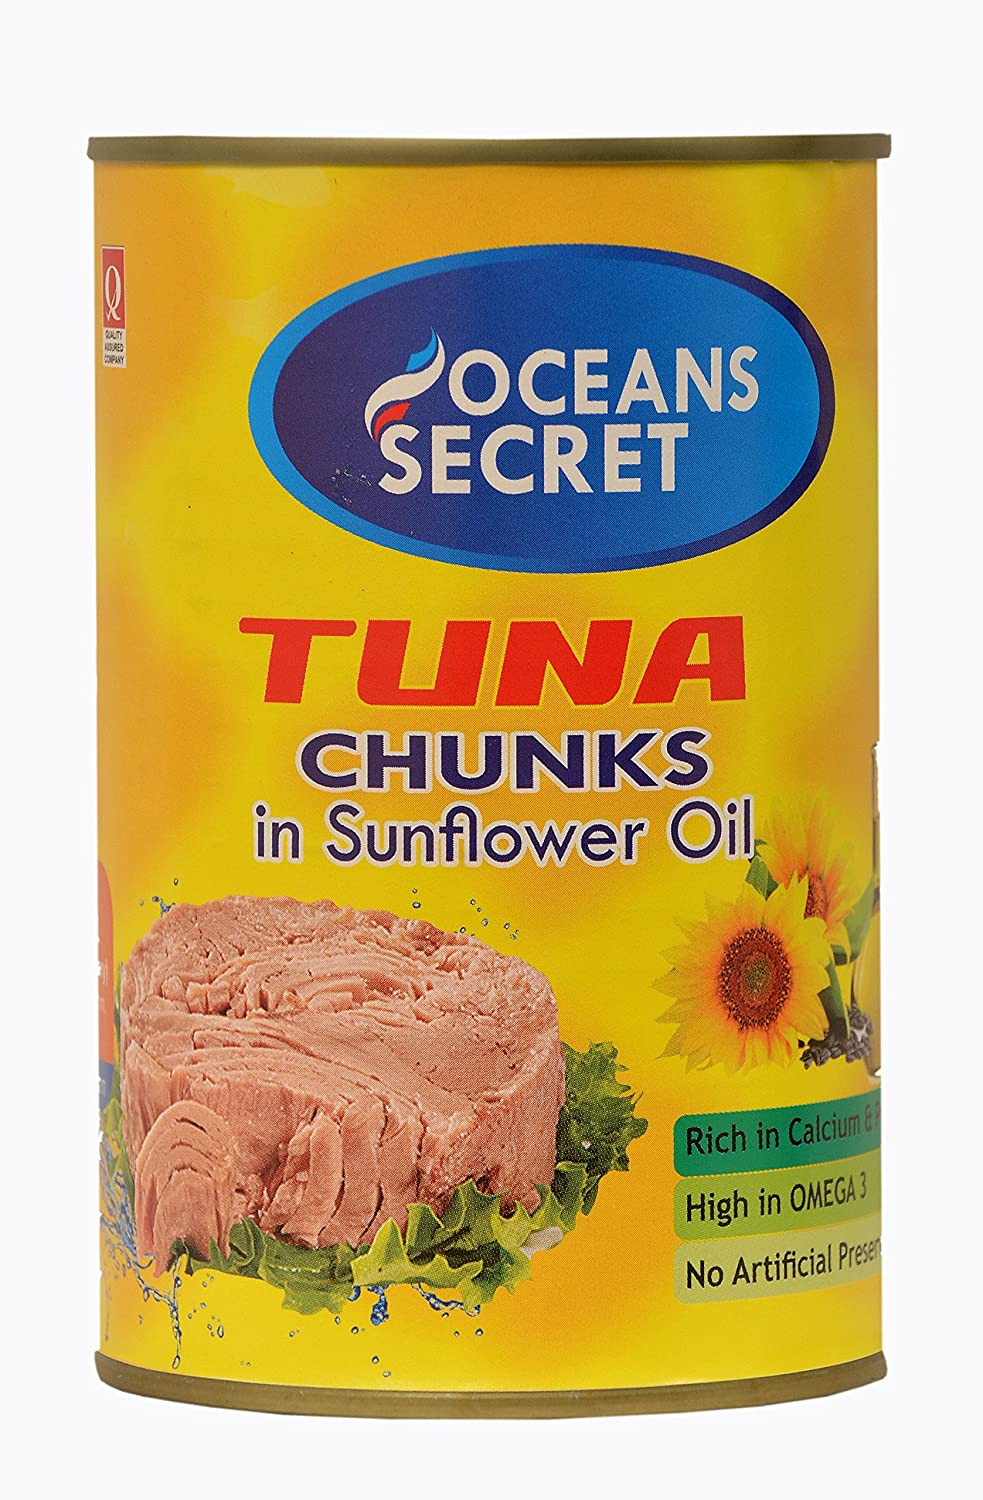 Ocean's Secret Tuna Chunks in Sunflower Oil Image